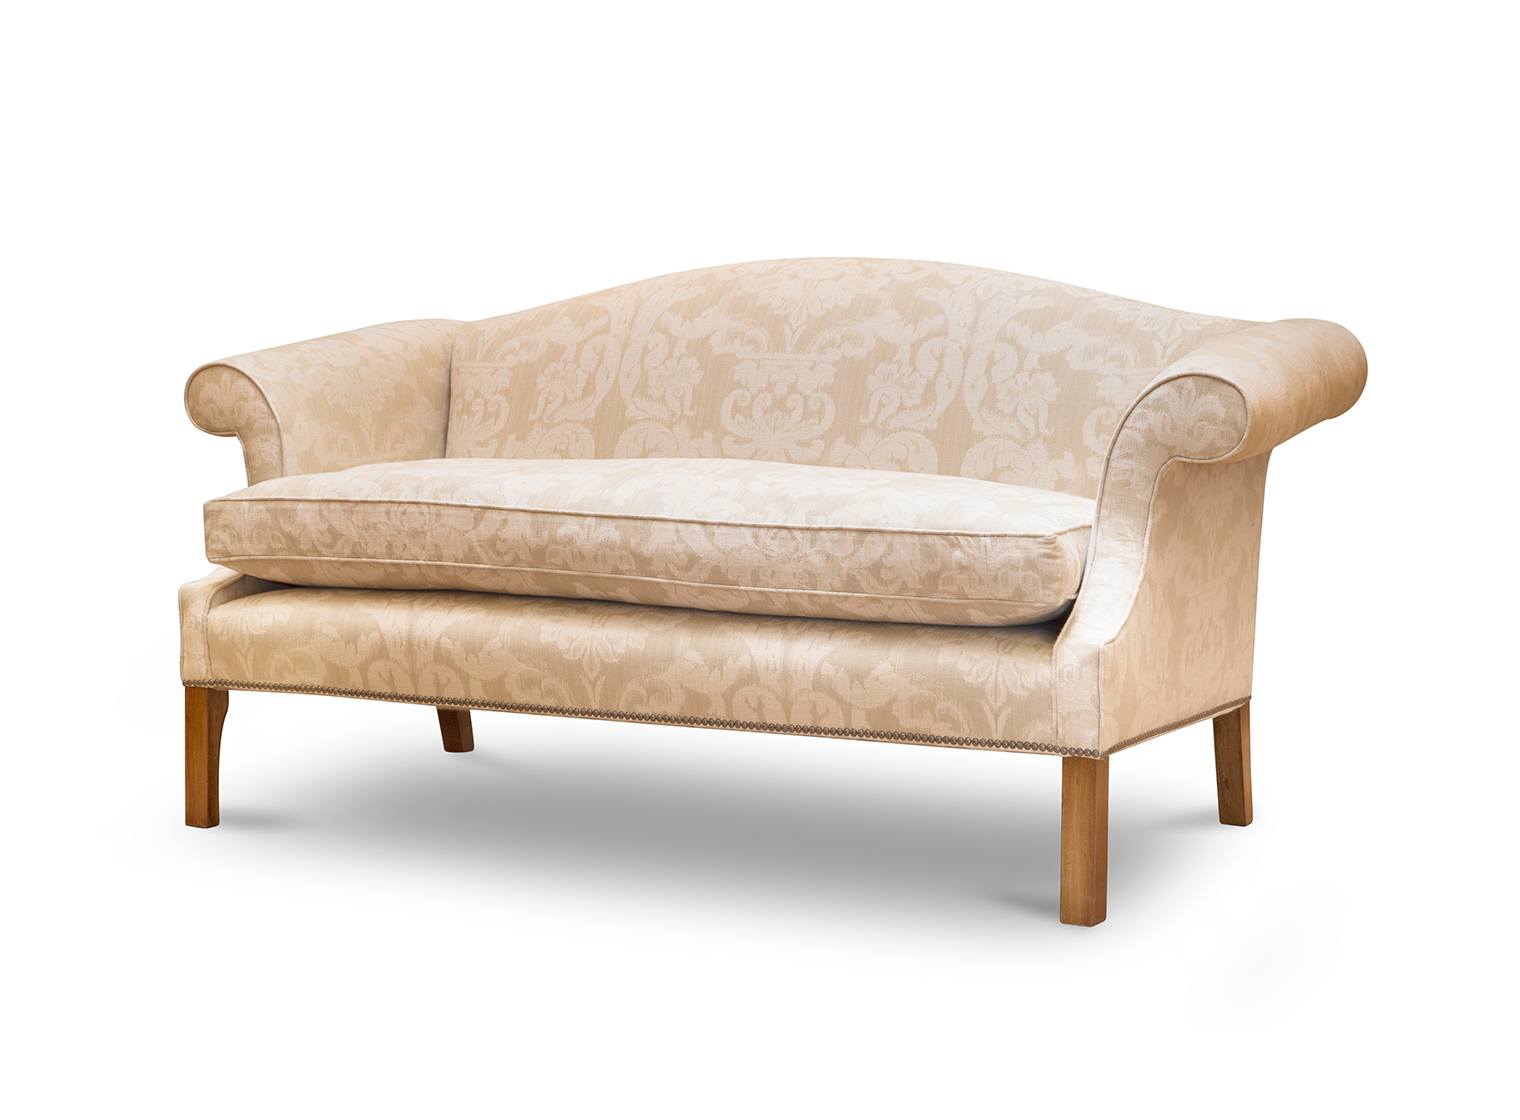 Congreve 2.5 sofa in Wicklow - Vanilla - Beaumont & Fletcher